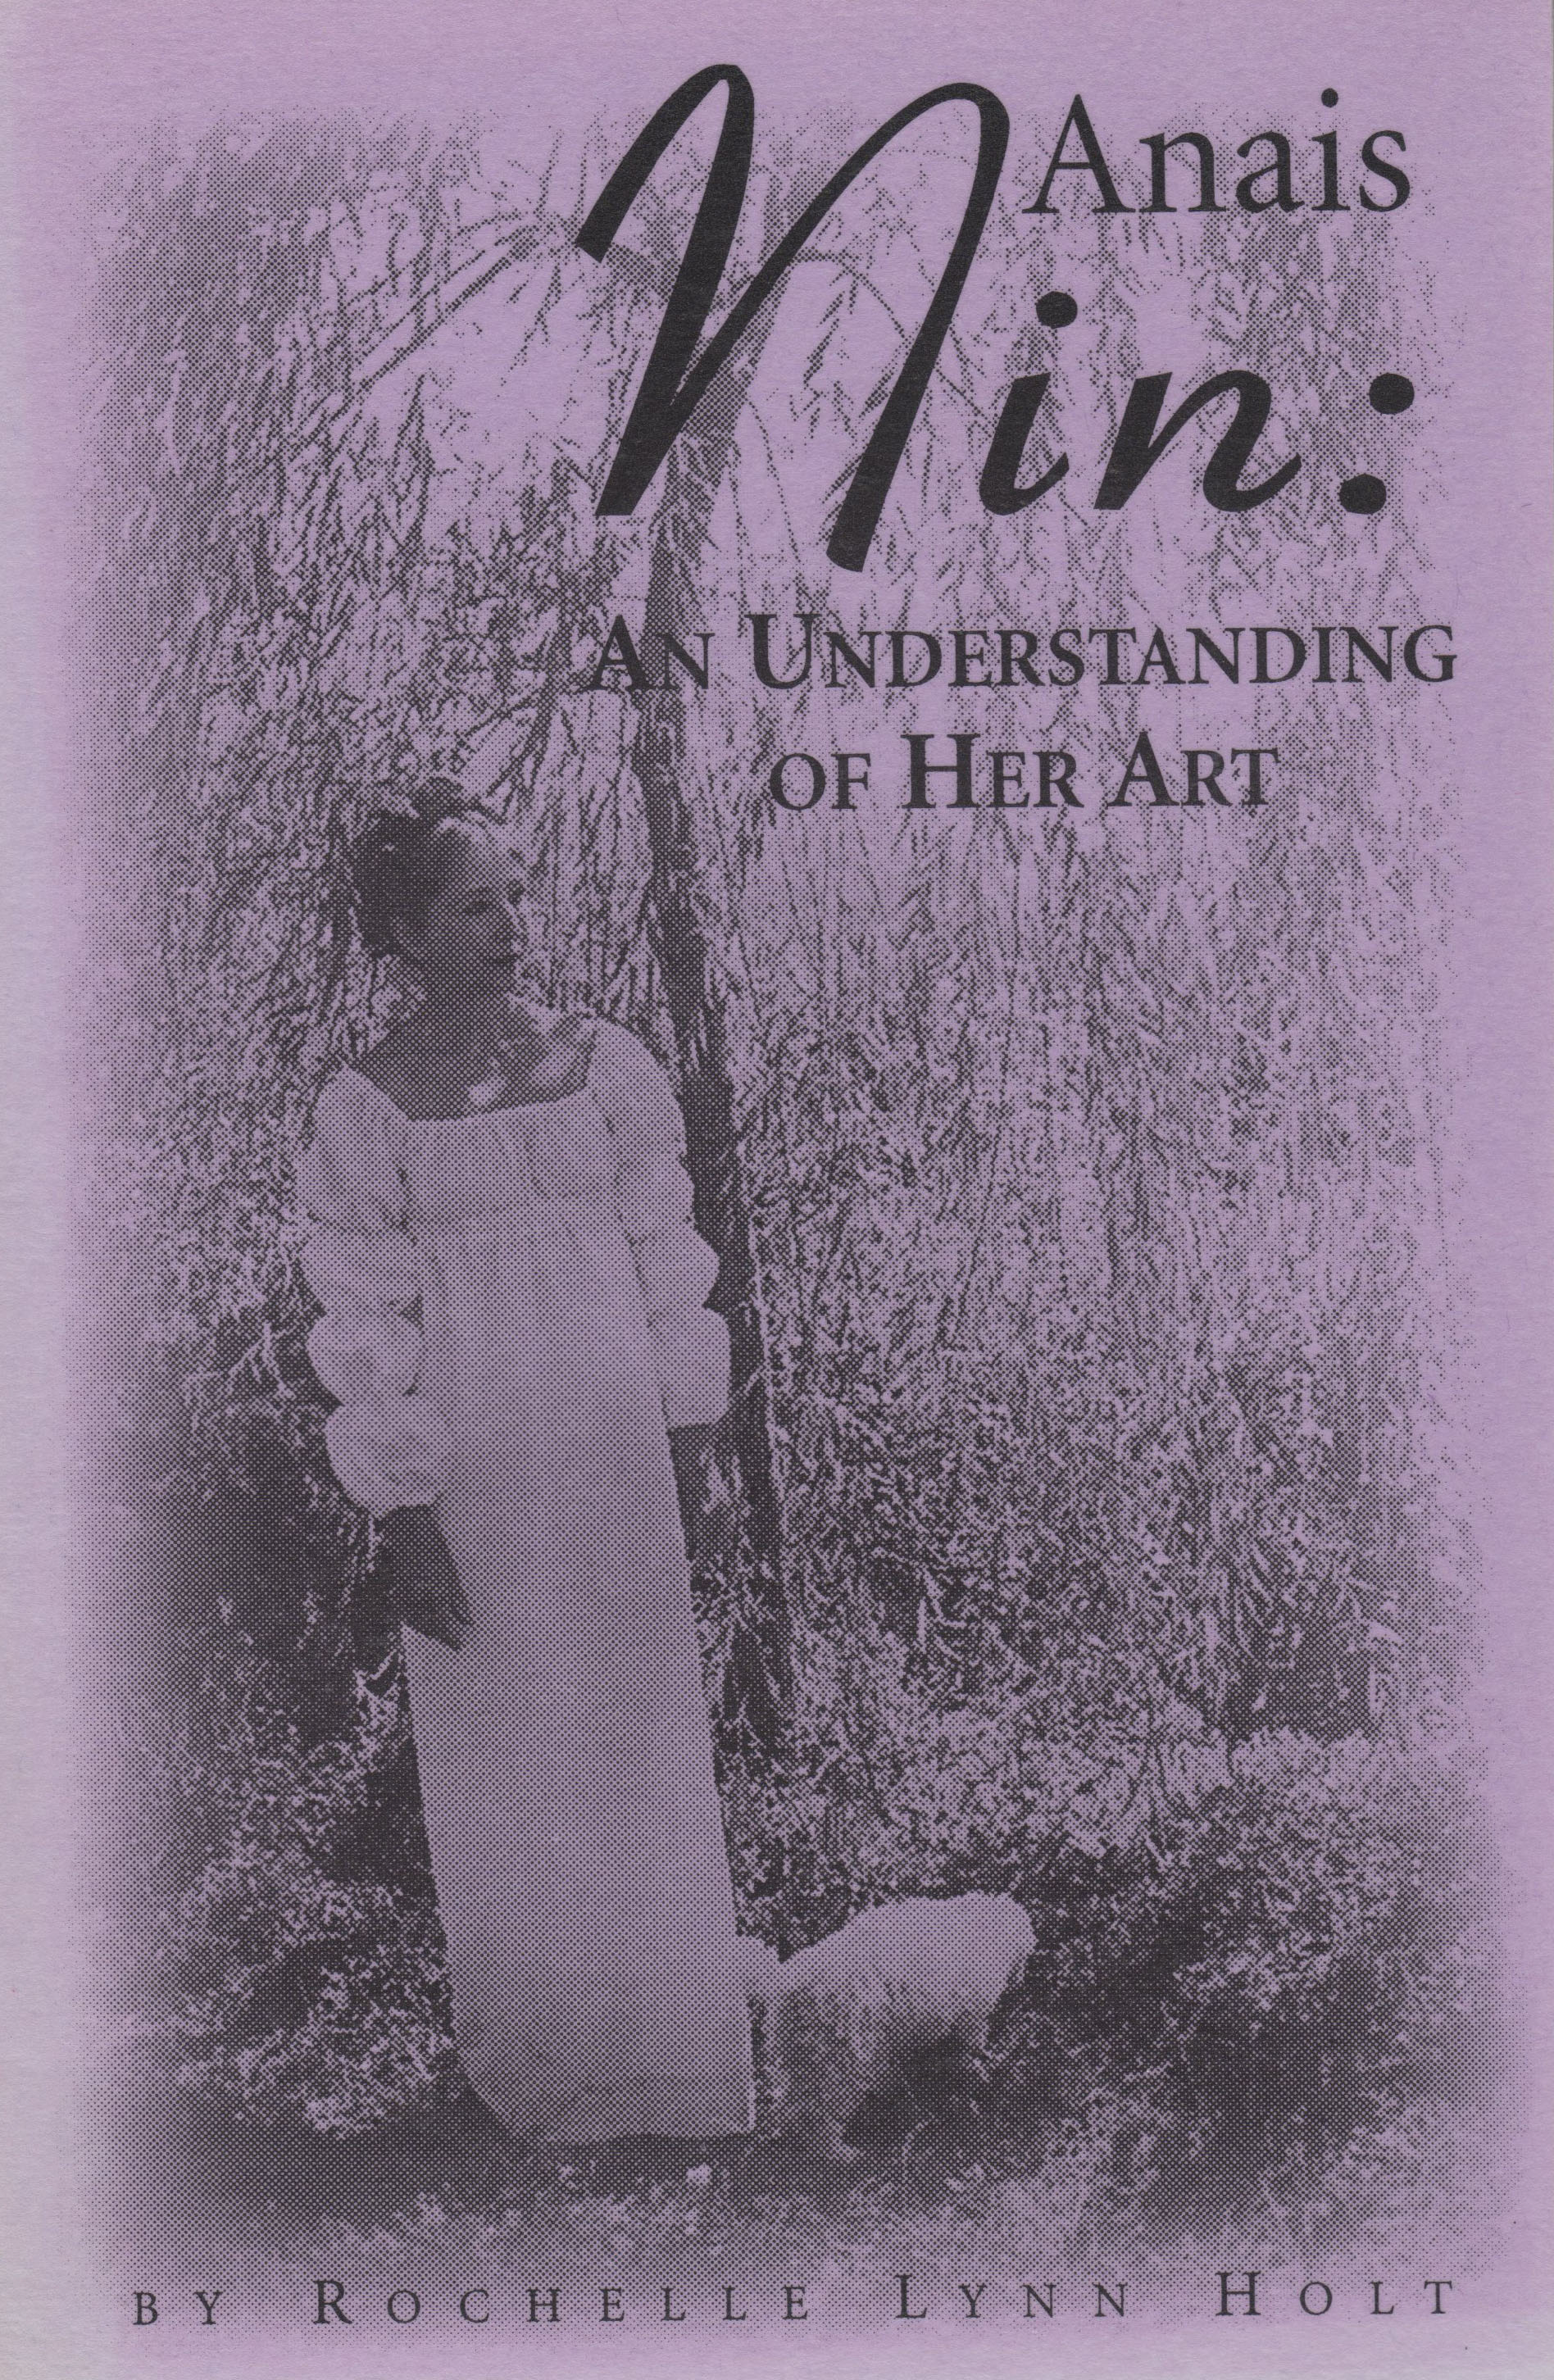 Anais Nin: An Understanding of Her Art